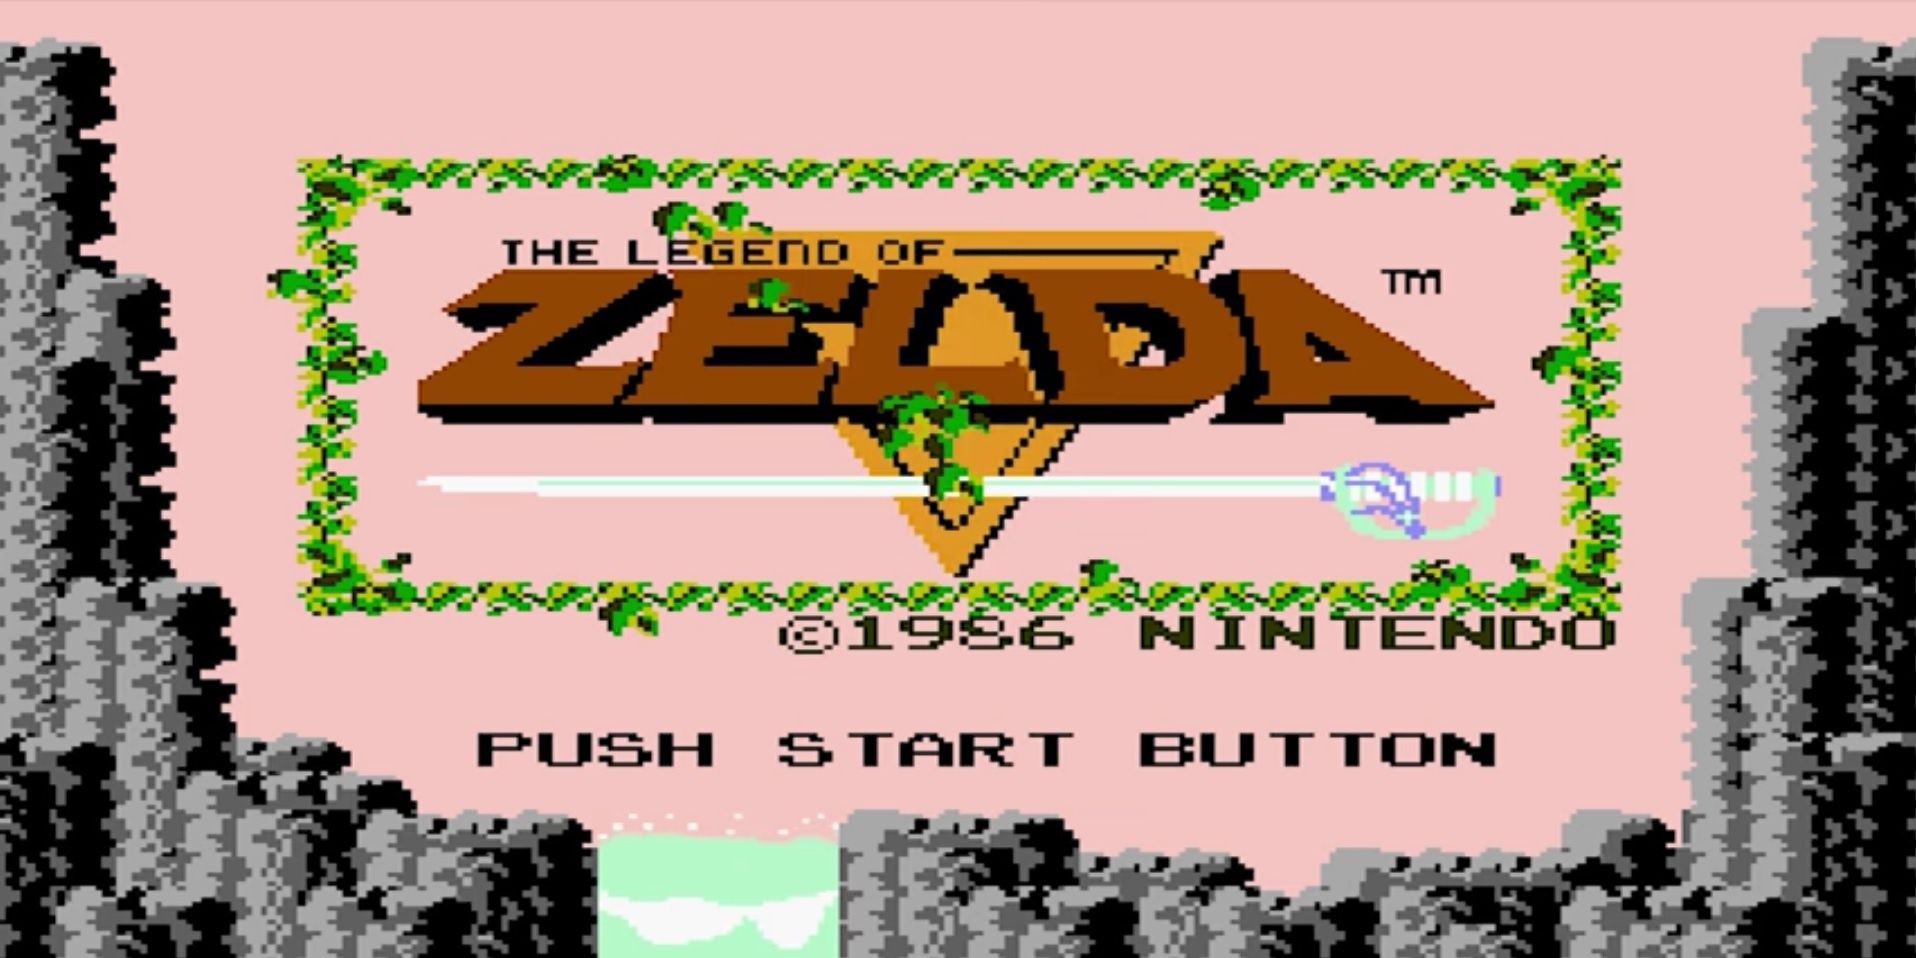 The Legend of Zelda 1 NES title screen 1